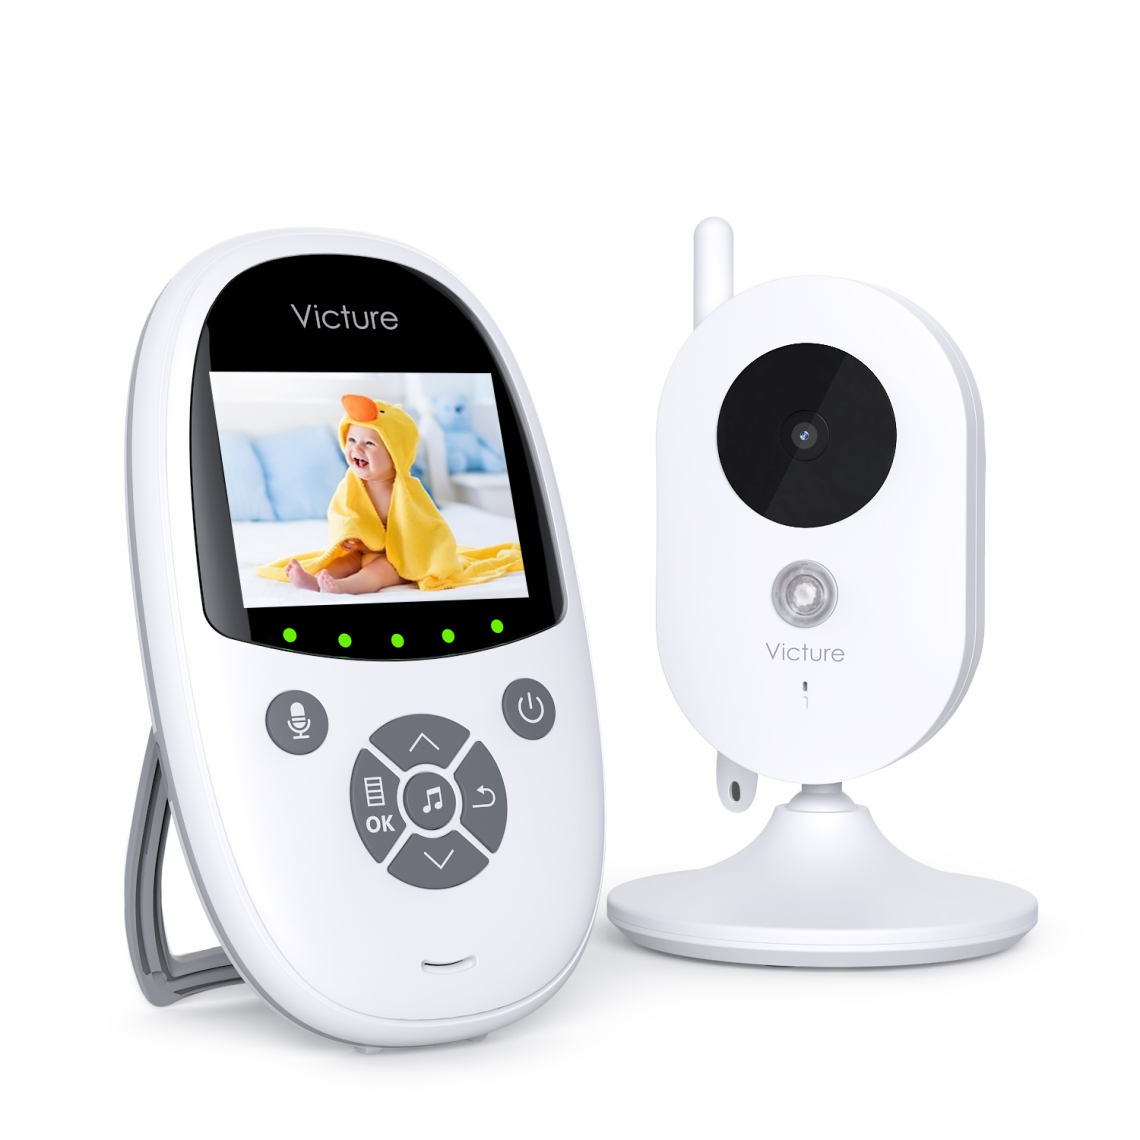 Victure - Babyphone Caméra Victure BM24 2.4 GHz Communication Bidirectionnelle Vision Nocturne - Caméra de surveillance connectée